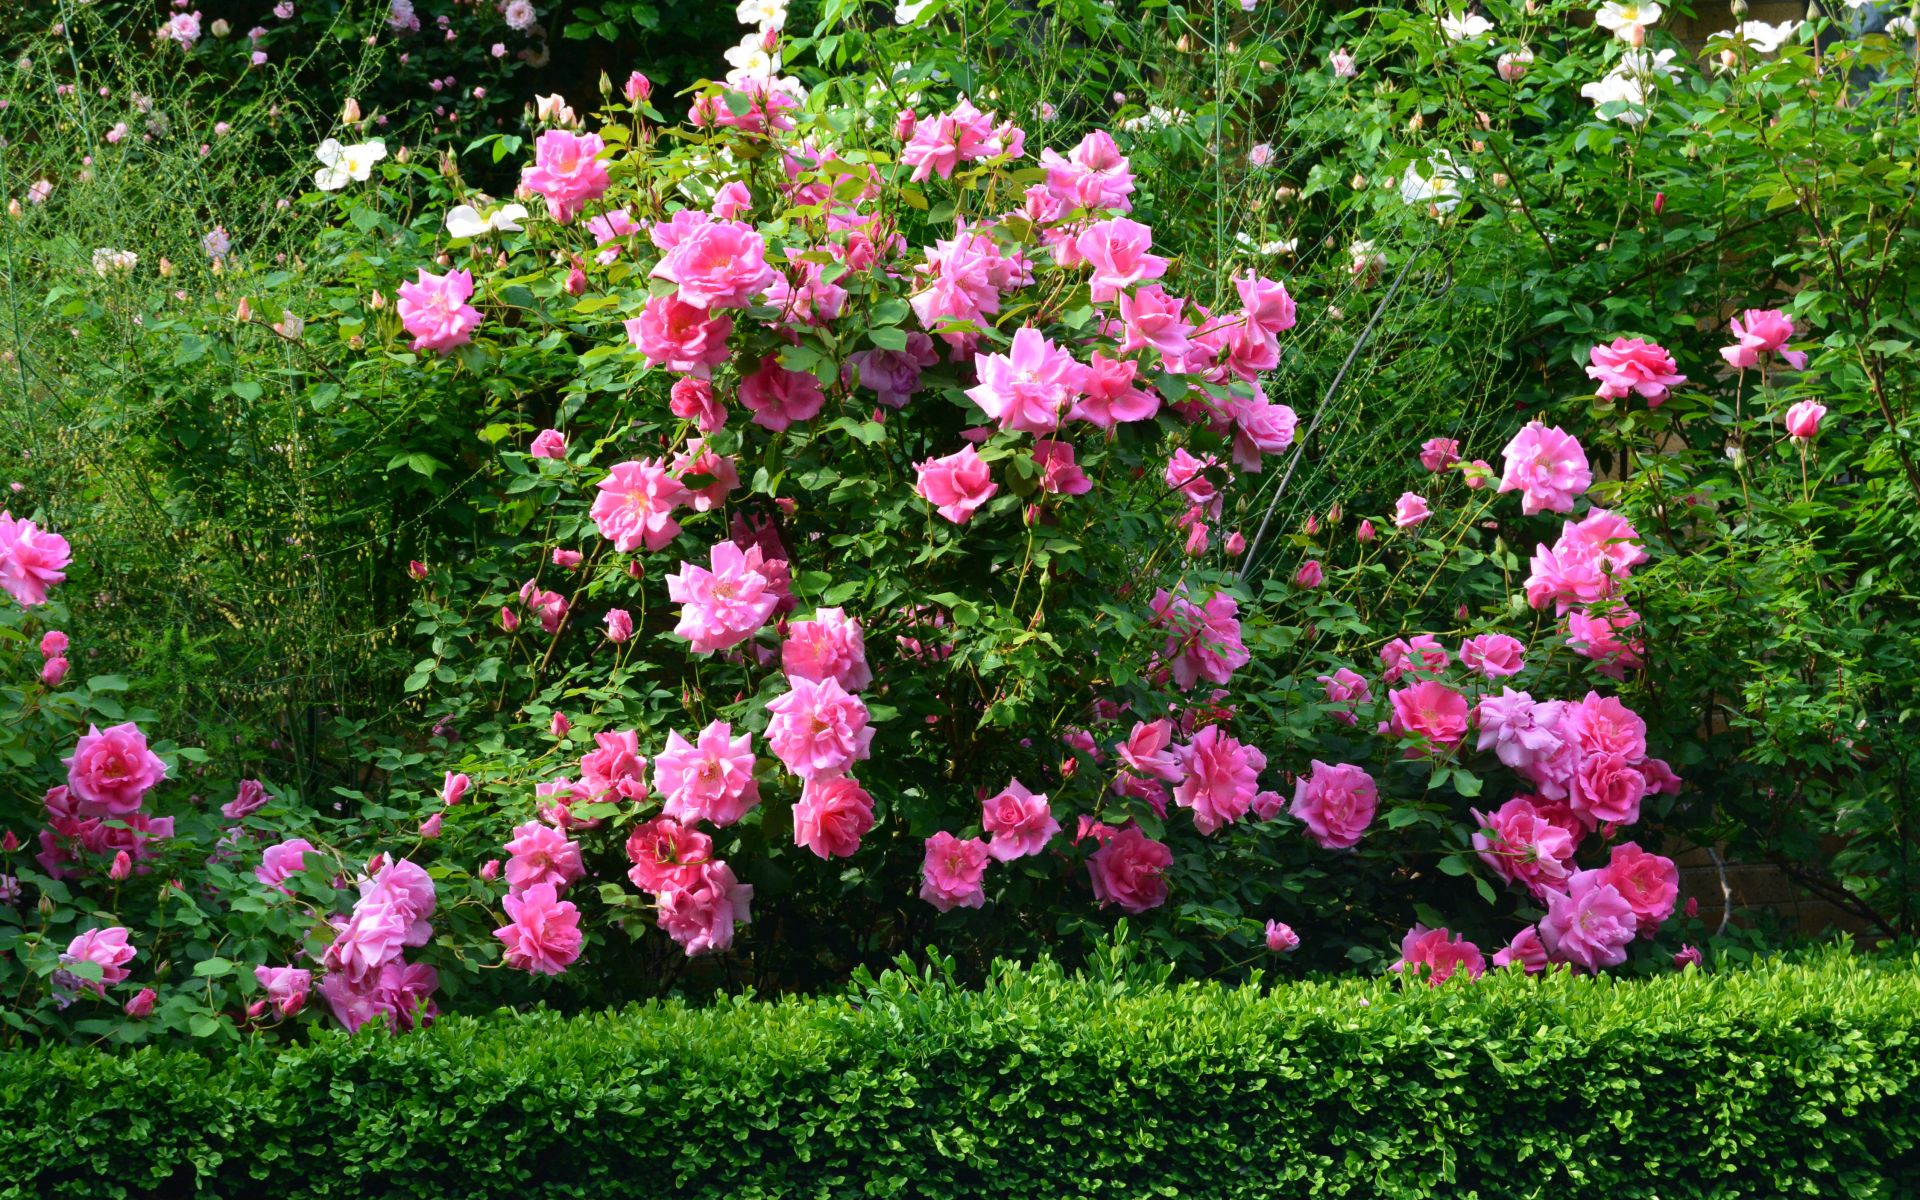 Pink Rose Bush wallpaper. Pink Rose Bush